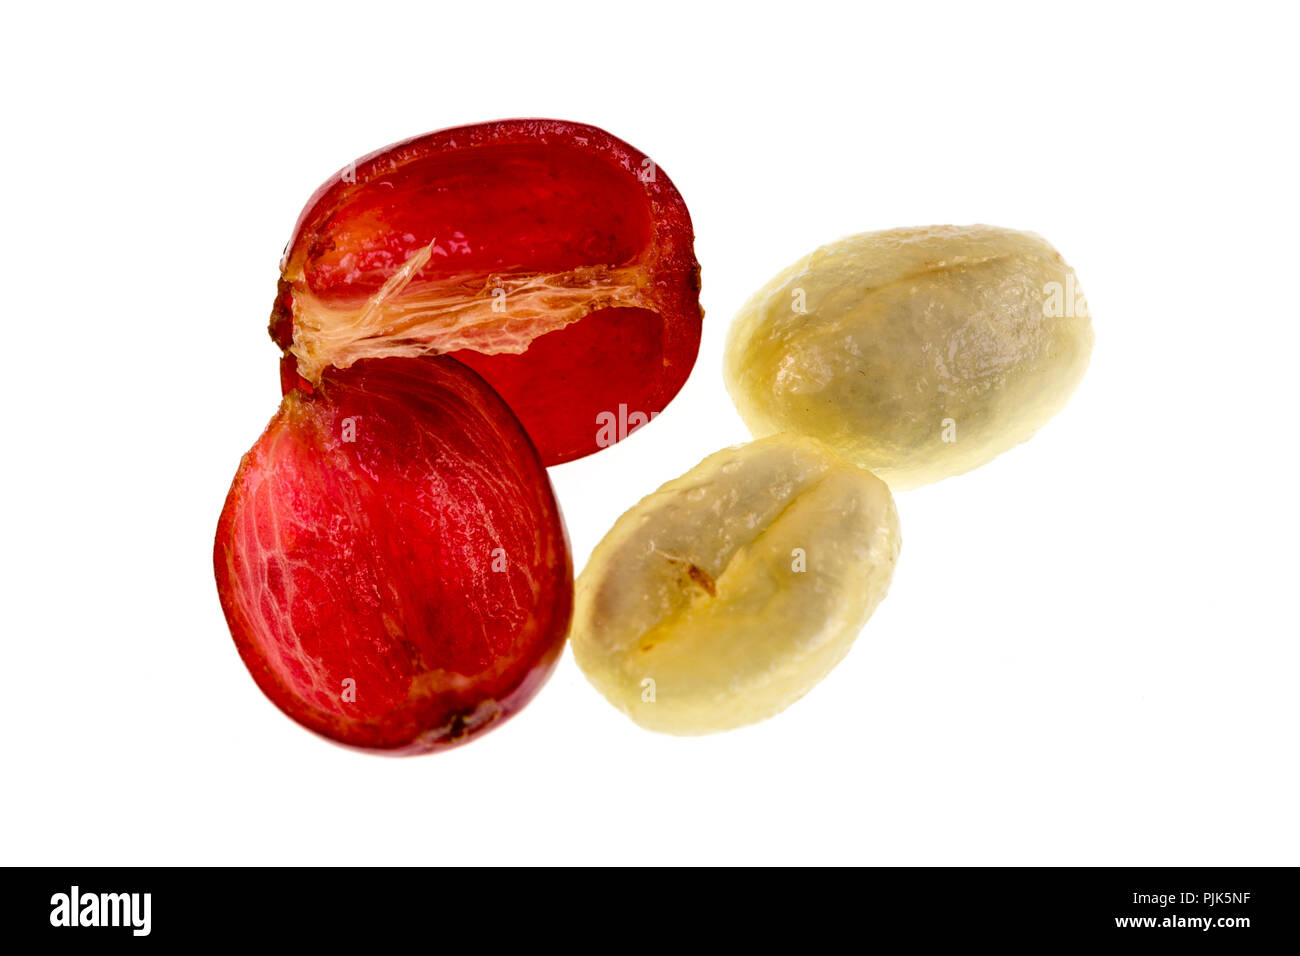 Blick auf einen frischen Kaffee kirsche frucht Anatomie mit den äußeren Abschnitt aus der Haut und Zellstoff, in Rot im Bild und den inneren Abschnitt oder Saatgut w Stockfoto